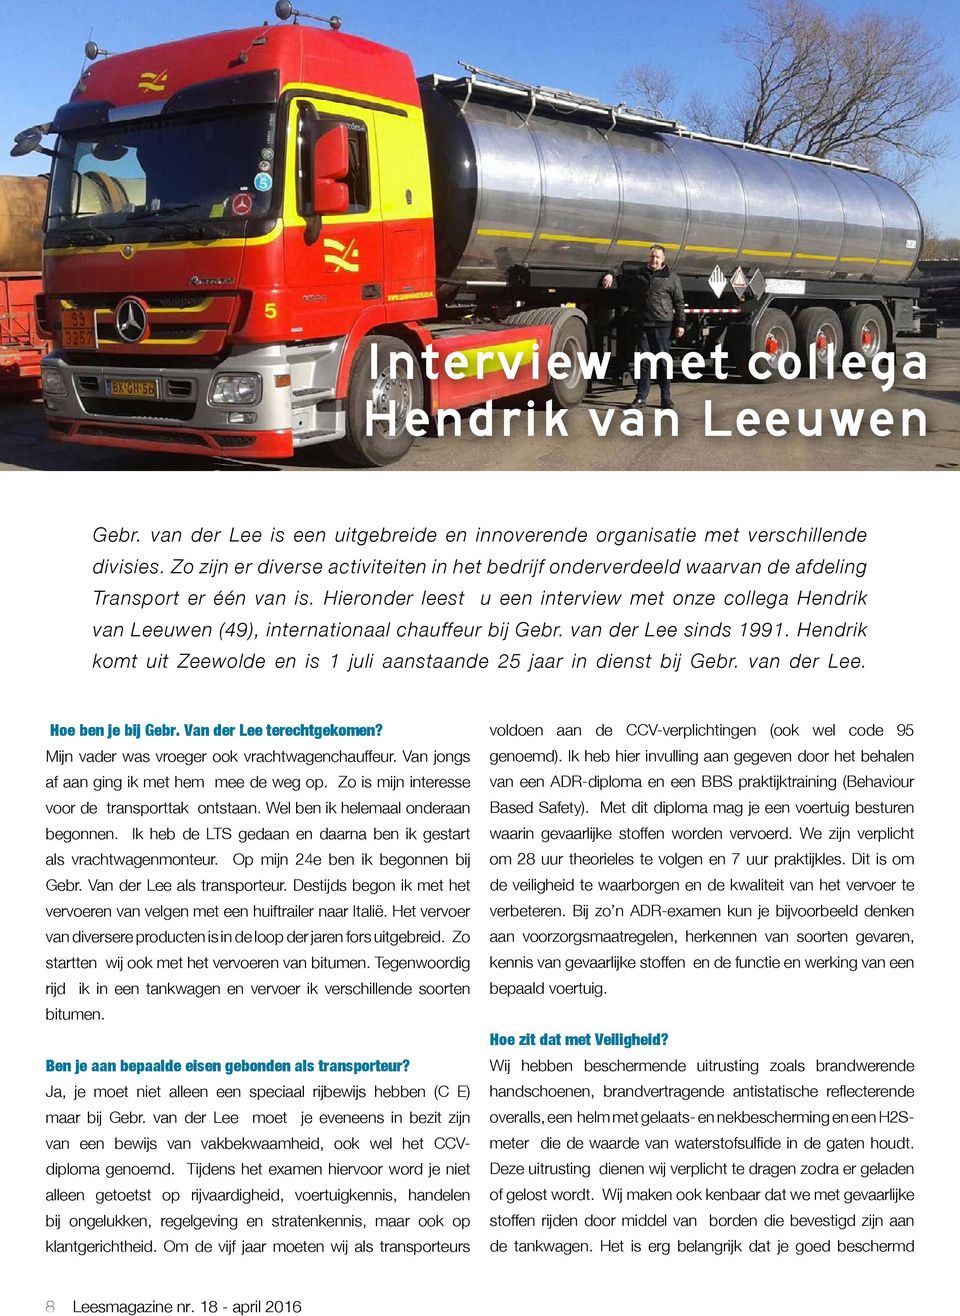 Hieronder leest u een interview met onze collega Hendrik van Leeuwen (49), internationaal chauffeur bij Gebr. van der Lee sinds 1991.